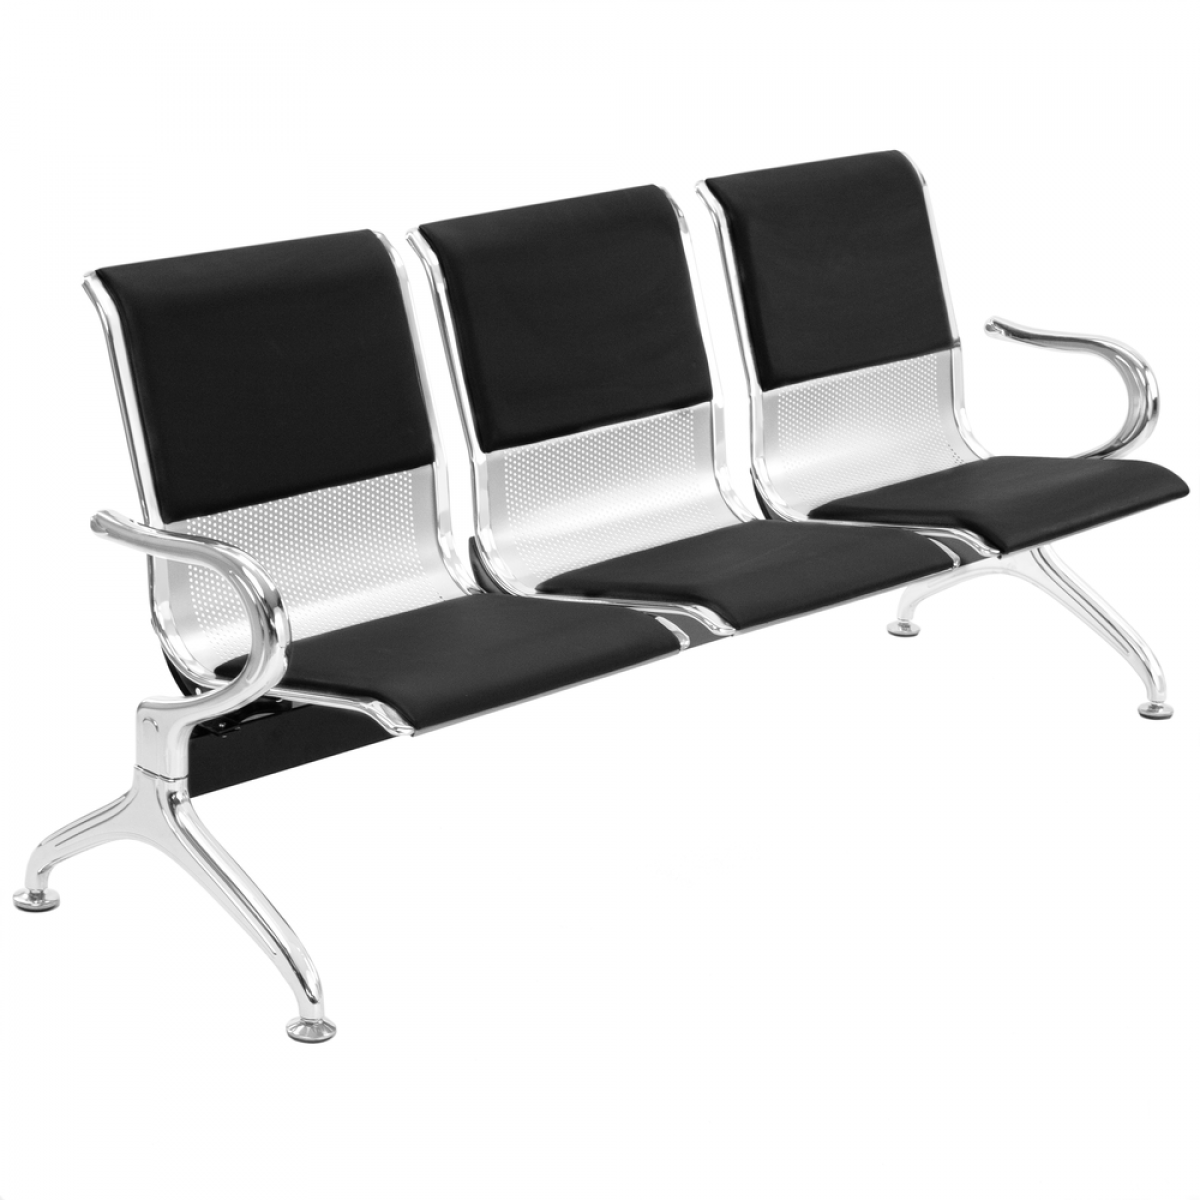 Primematik - Chaises sur poutre pour salle d'attente avec 3 sièges ergonomique rembourrés - Chaises